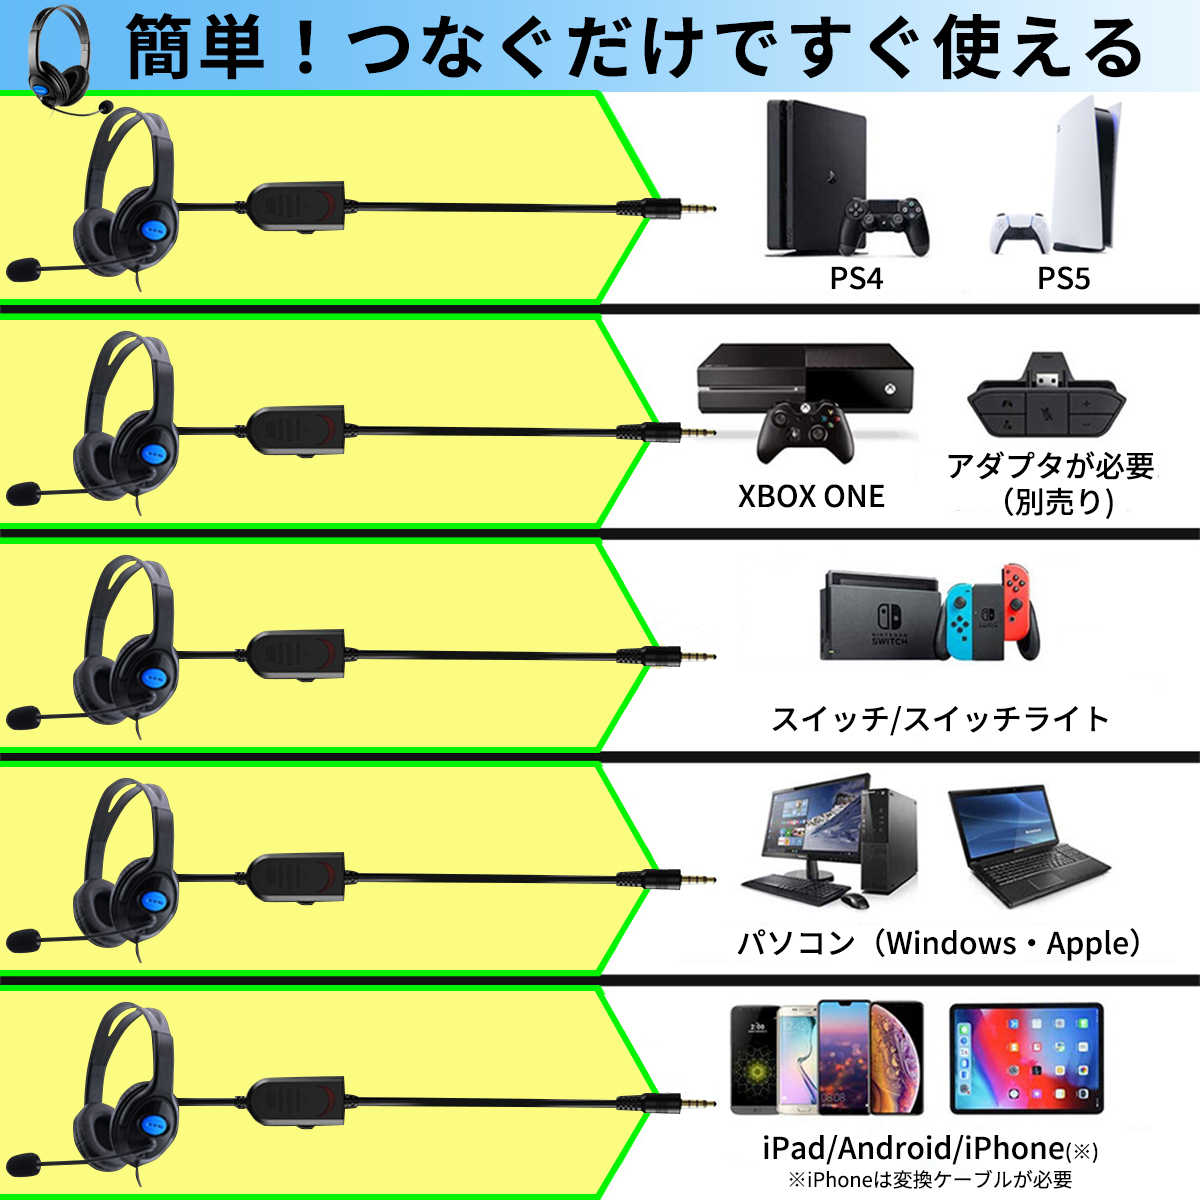 ゲーミングヘッドセット ヘッドホン マイク付き ゲーム PS4 PS5 SWITCH PC 有線 ボイスチャット ゲーム フォーナイト 高音質